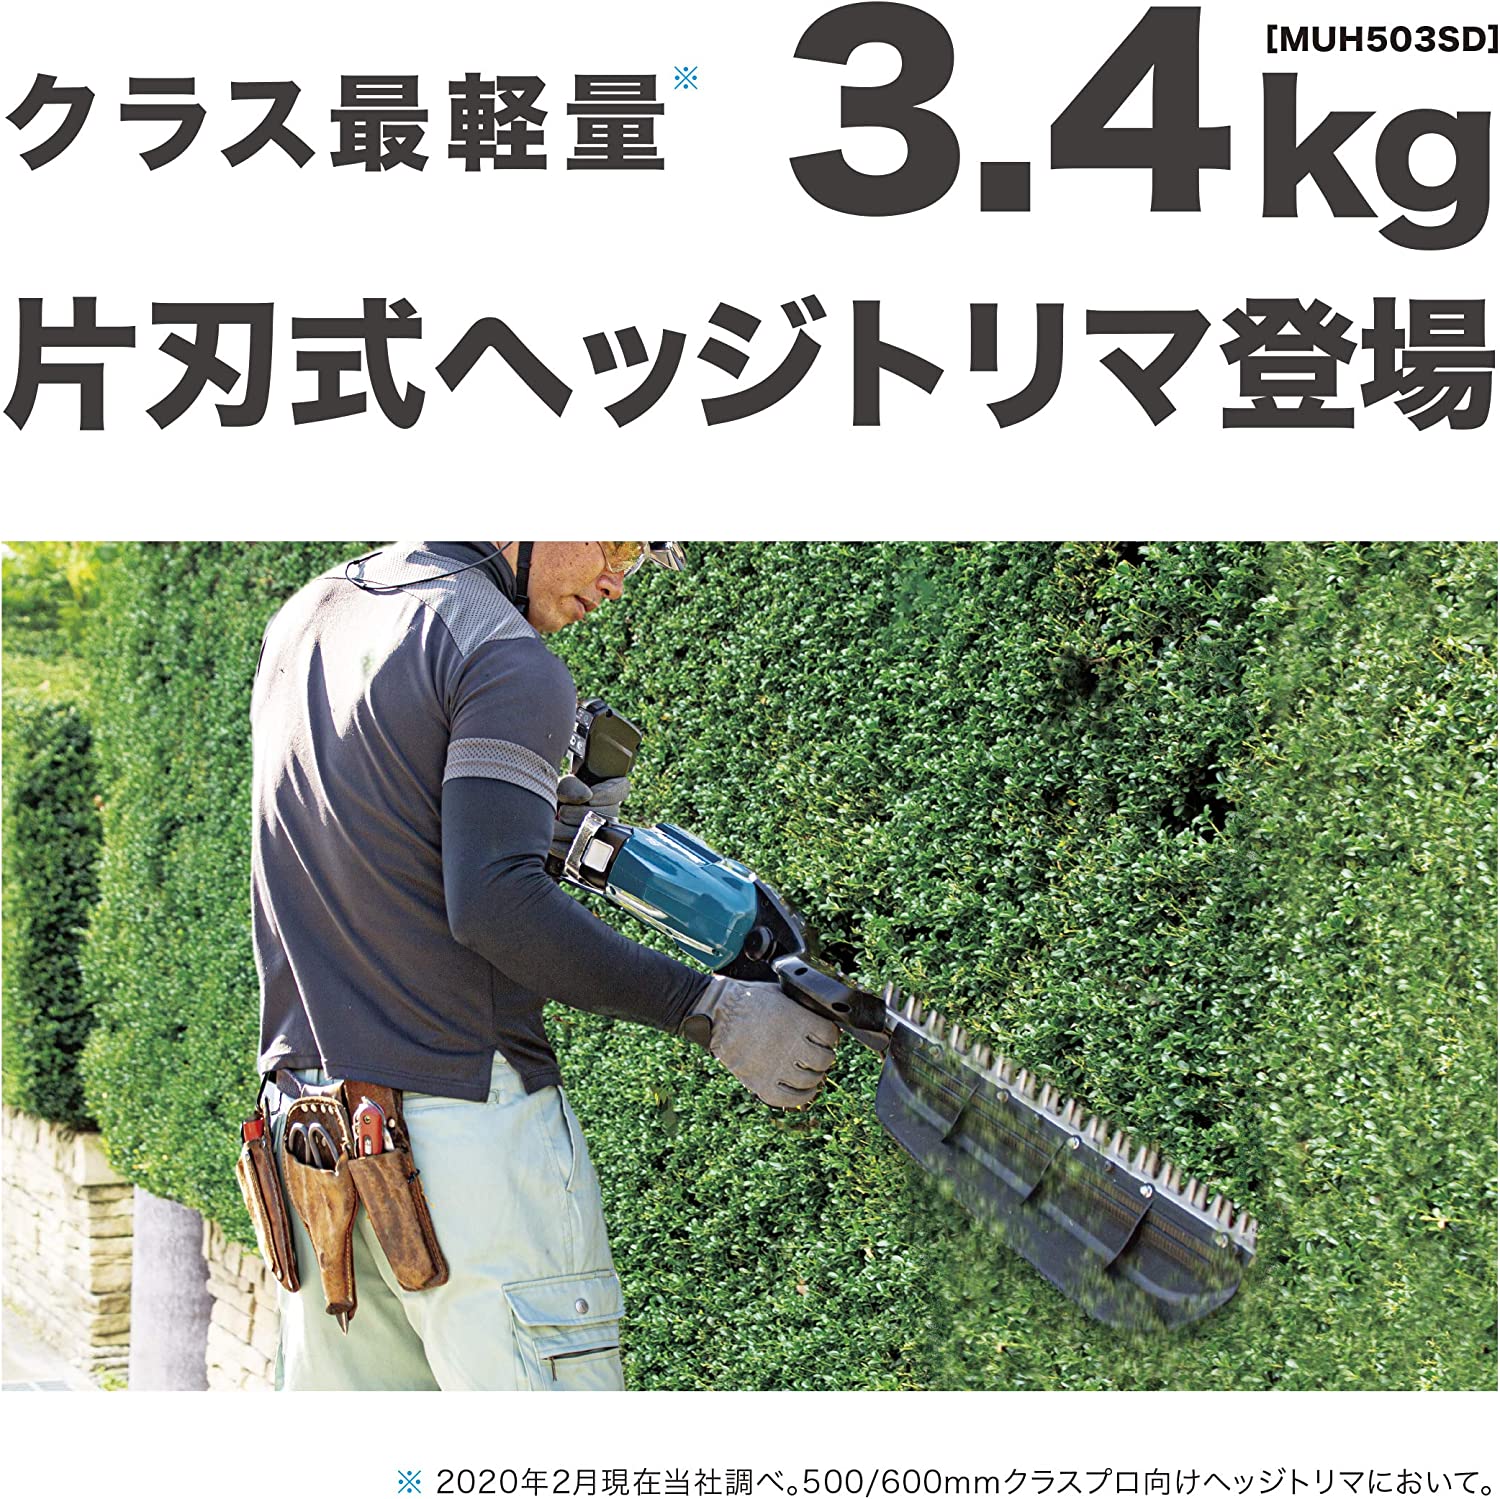 マキタ(makita) 500mm充電式ヘッジトリマー MUH503SDGX 片刃式 18V